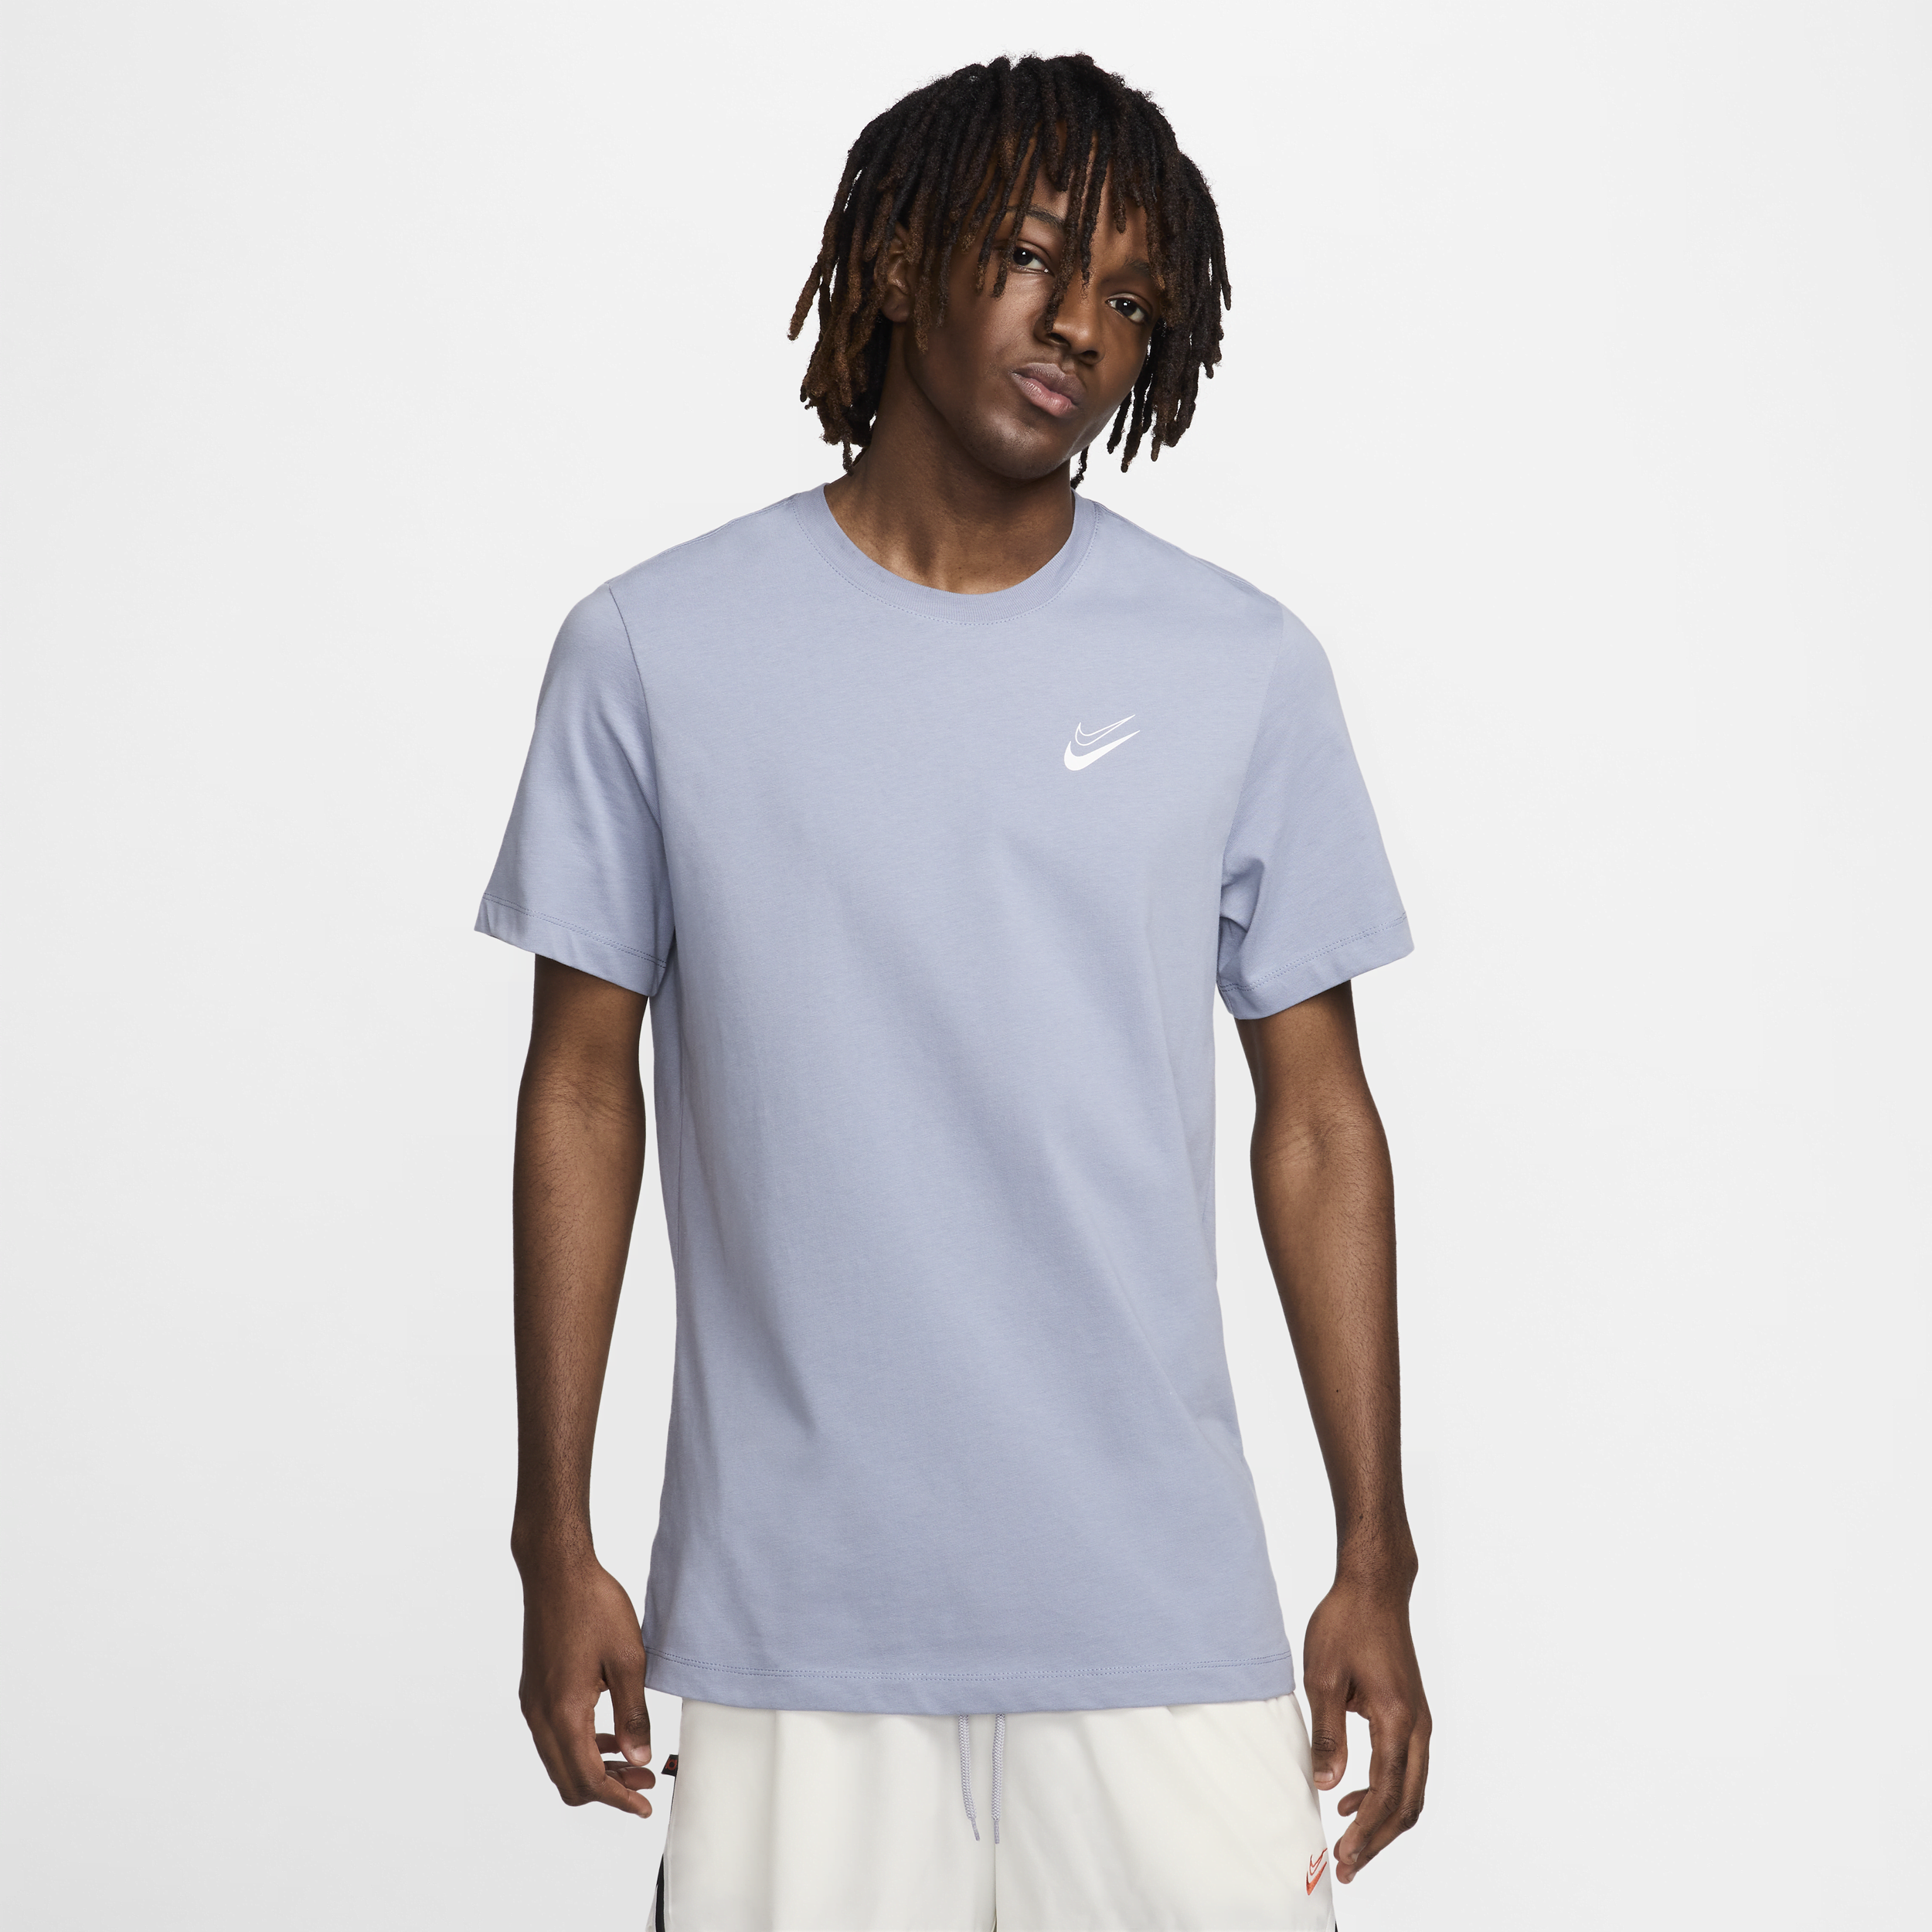 Nike Kevin Durant basketbalshirt voor heren Blauw